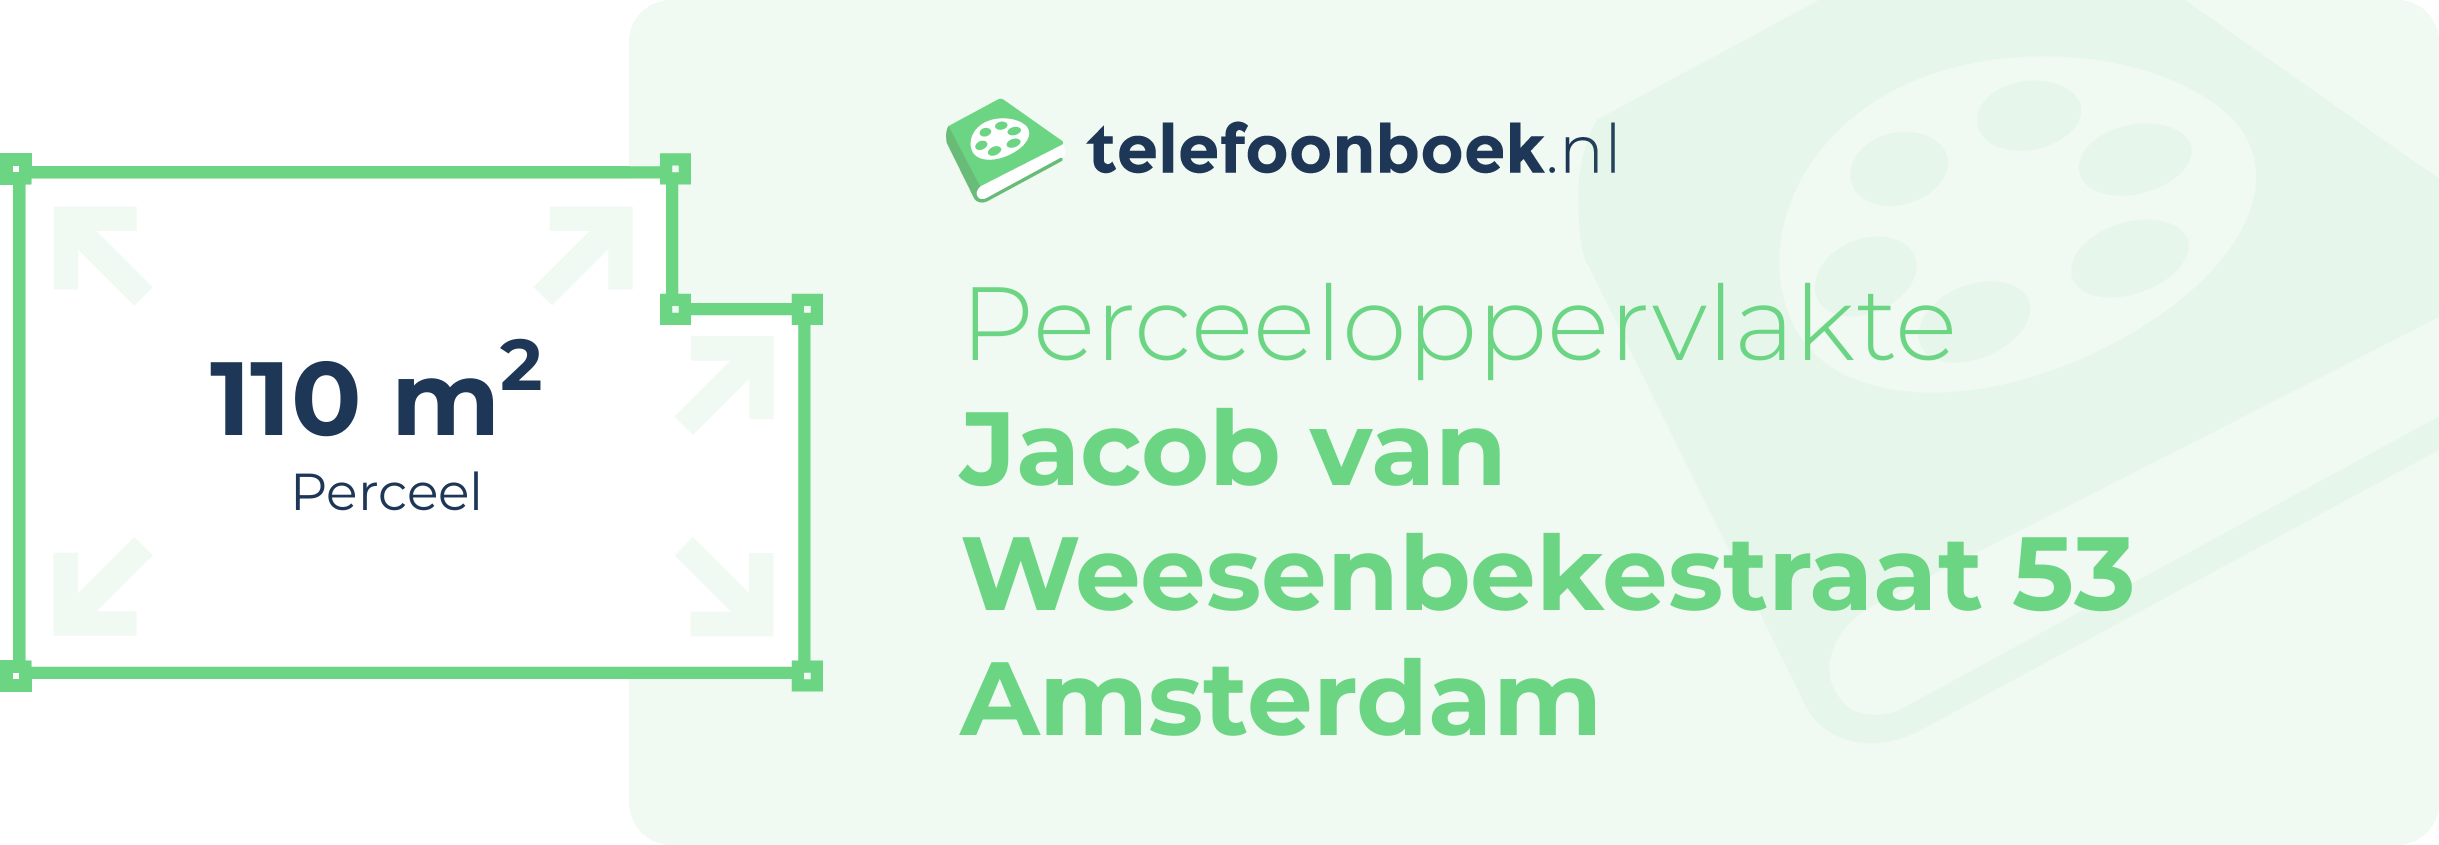 Perceeloppervlakte Jacob Van Weesenbekestraat 53 Amsterdam